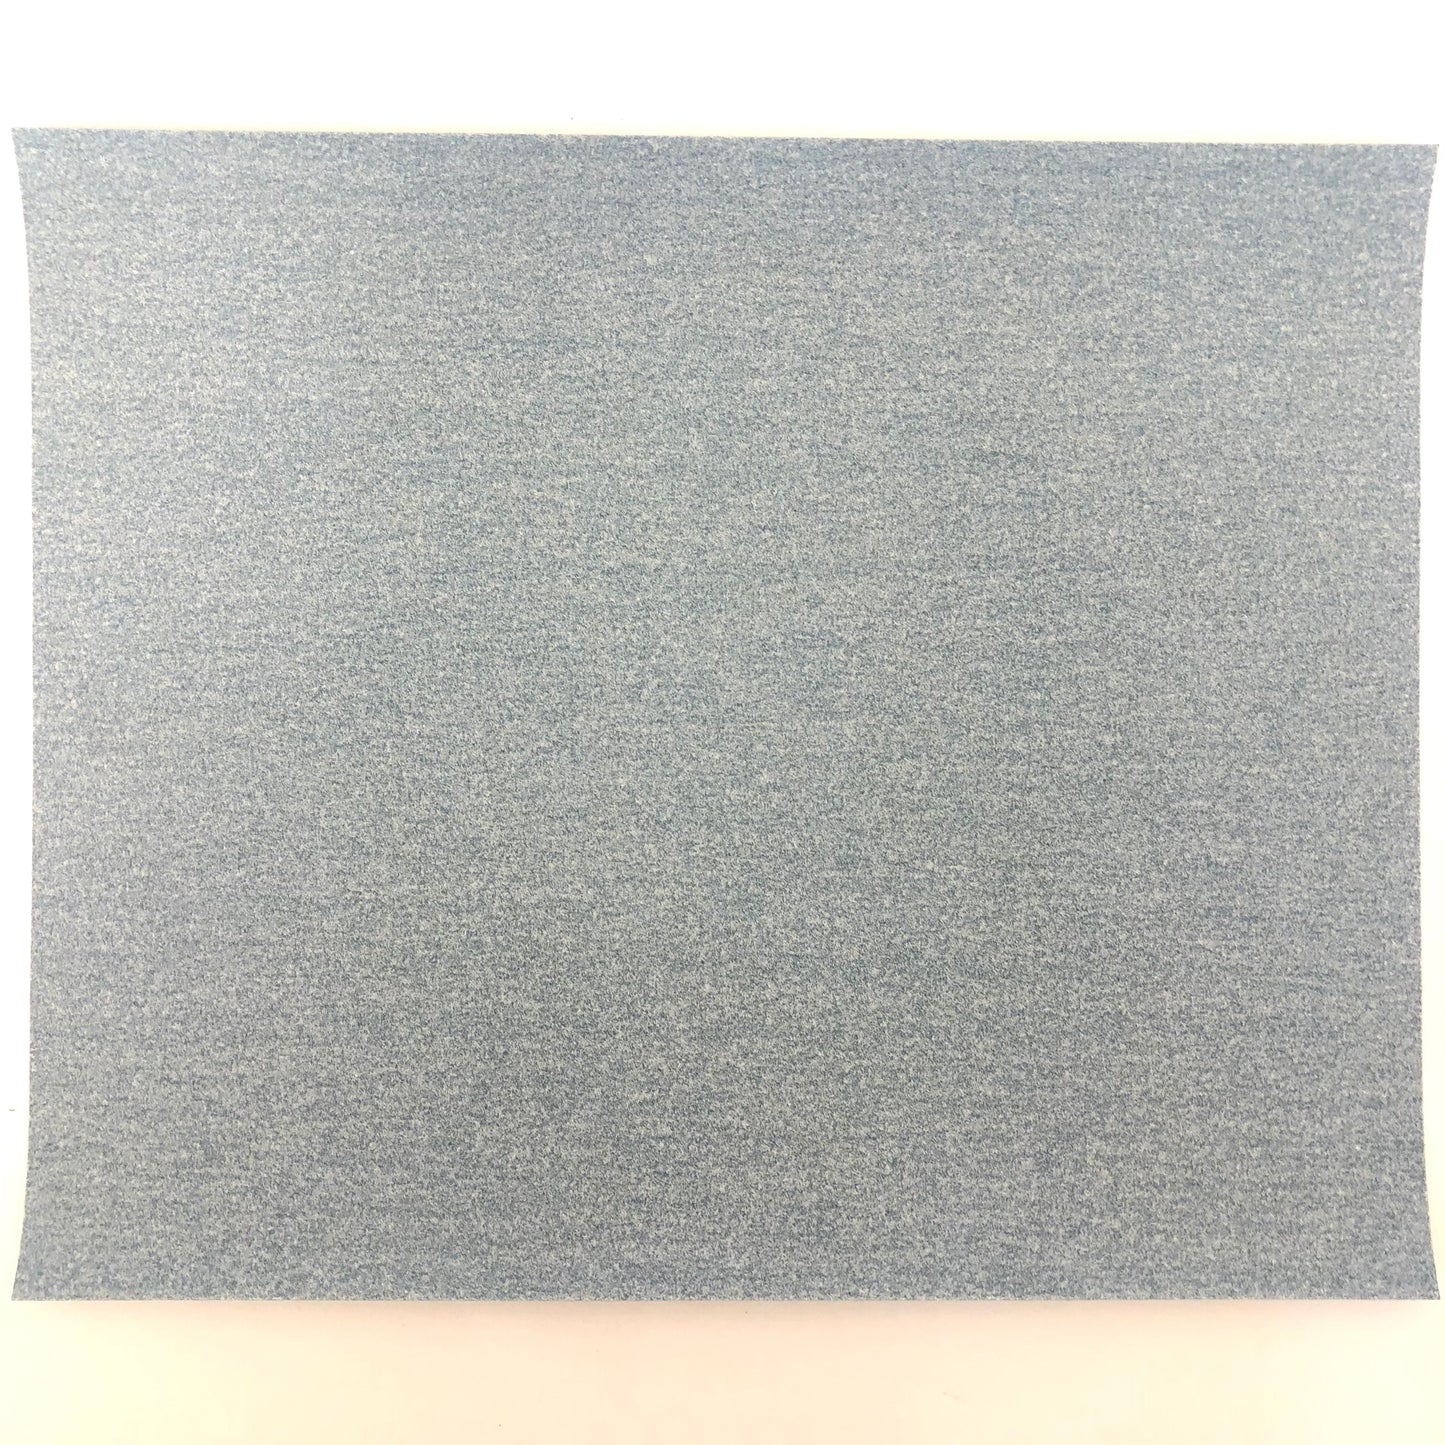 Sandpaper (1 sheet)